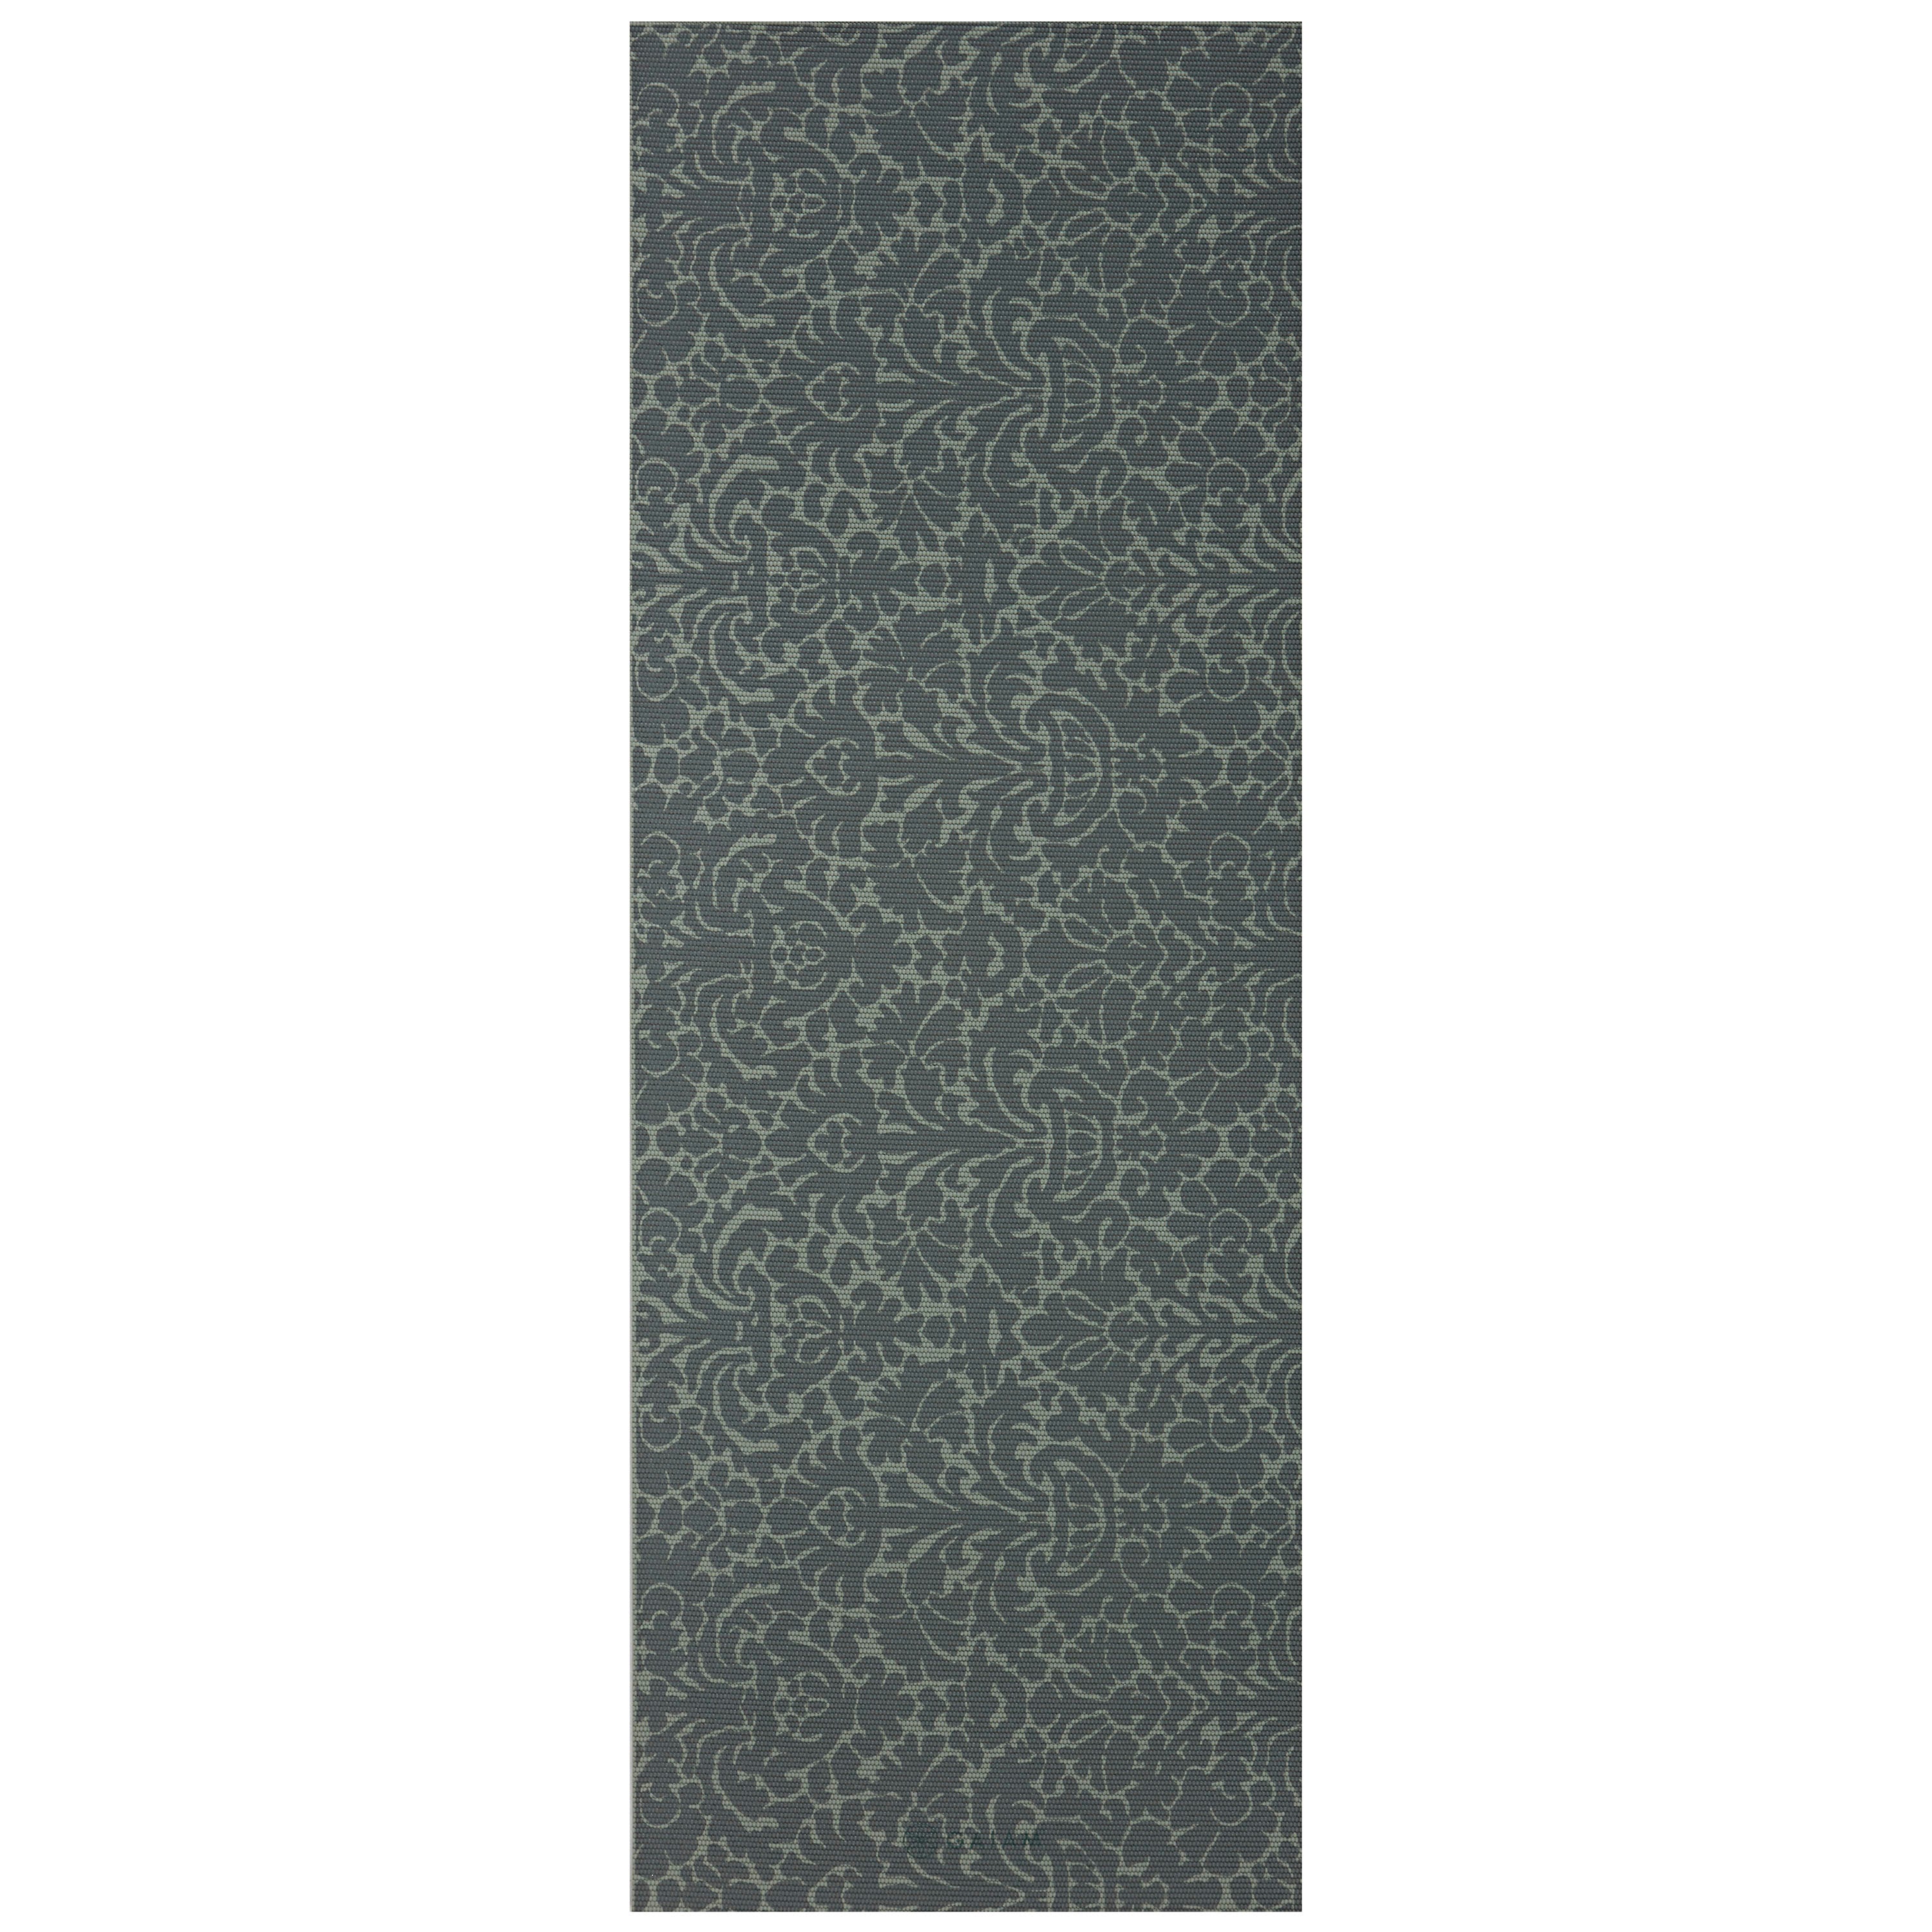 Premium Reversible Perpetual Blossom Yoga Mat (6mm) - Gaiam